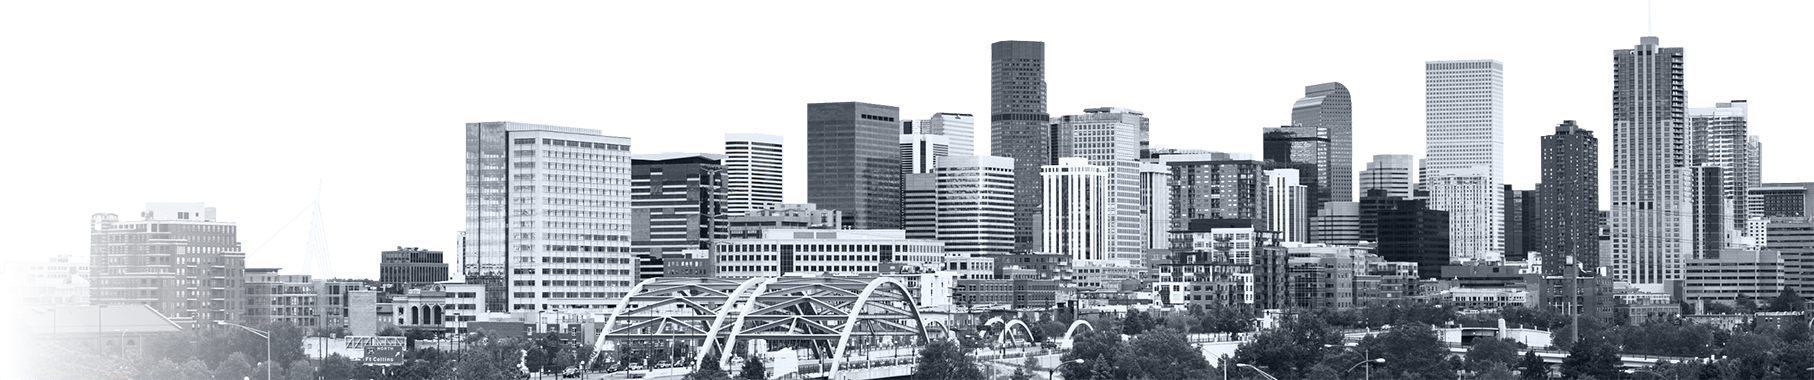 Denver - city of the event